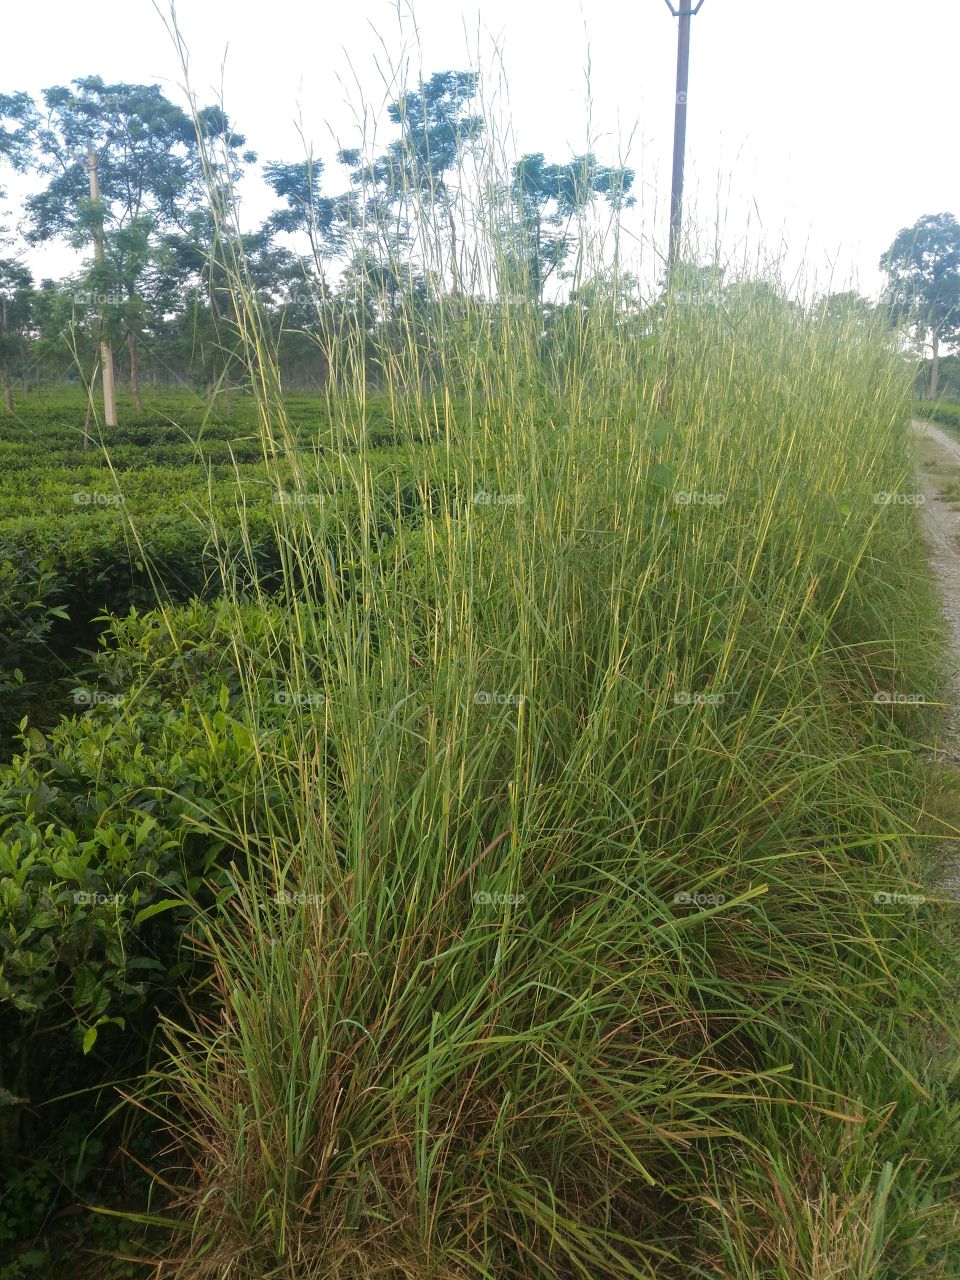 Centronila Grass